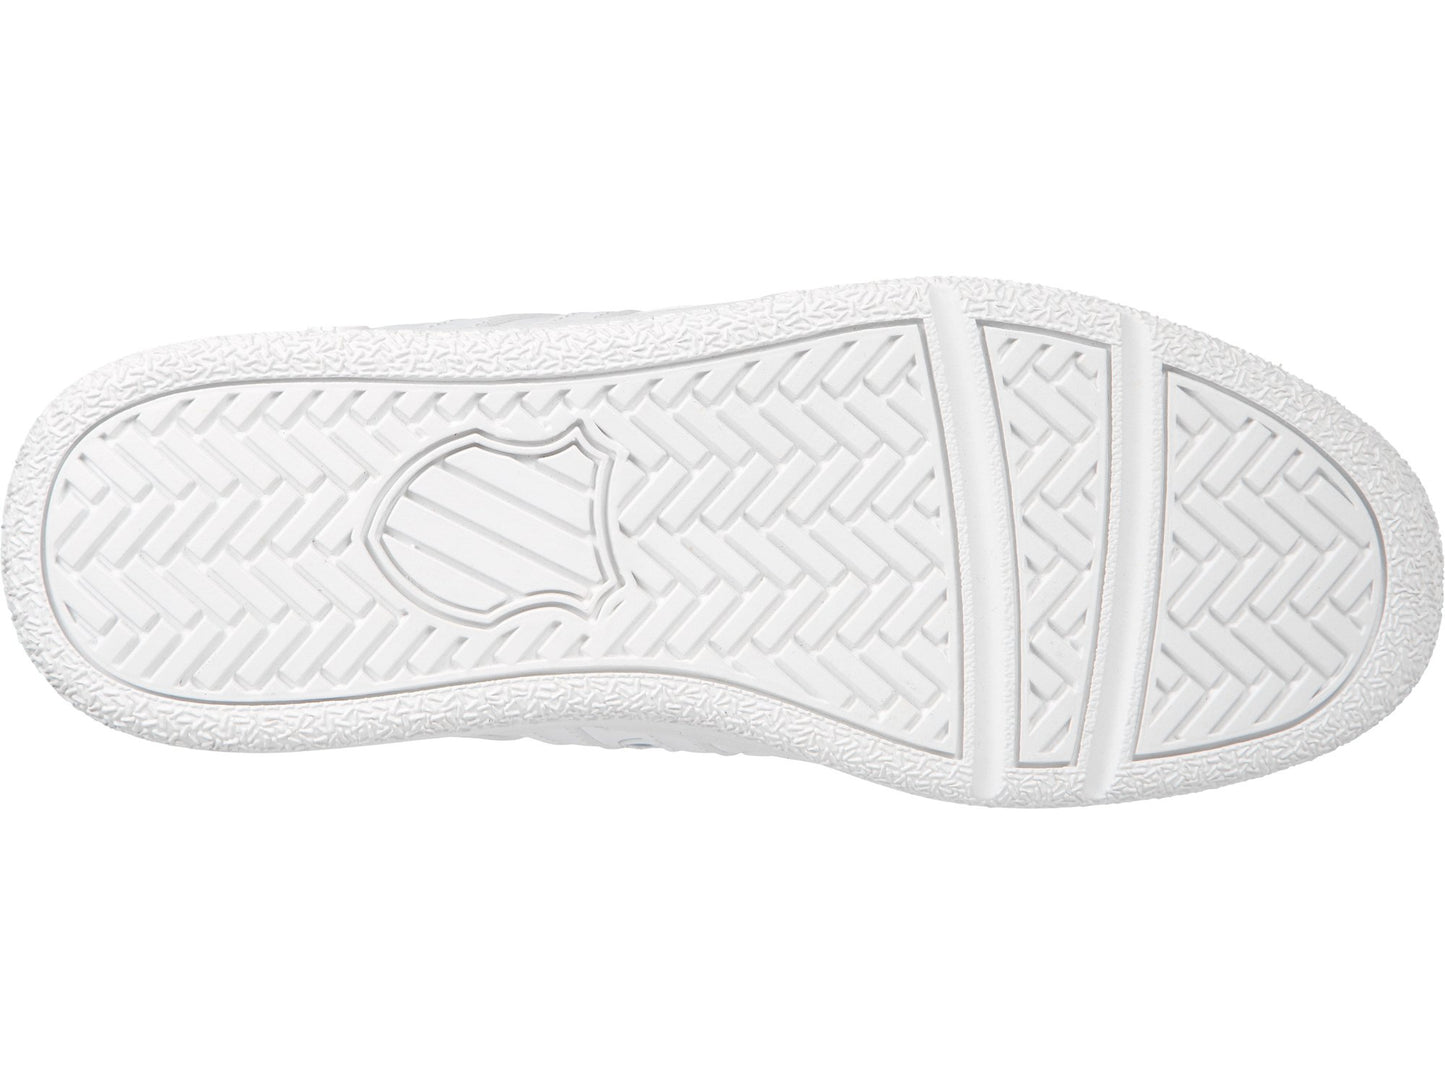 K-Swiss Men Classic VN Leather Sneaker White/White 03343-101-M / 07321-101-M